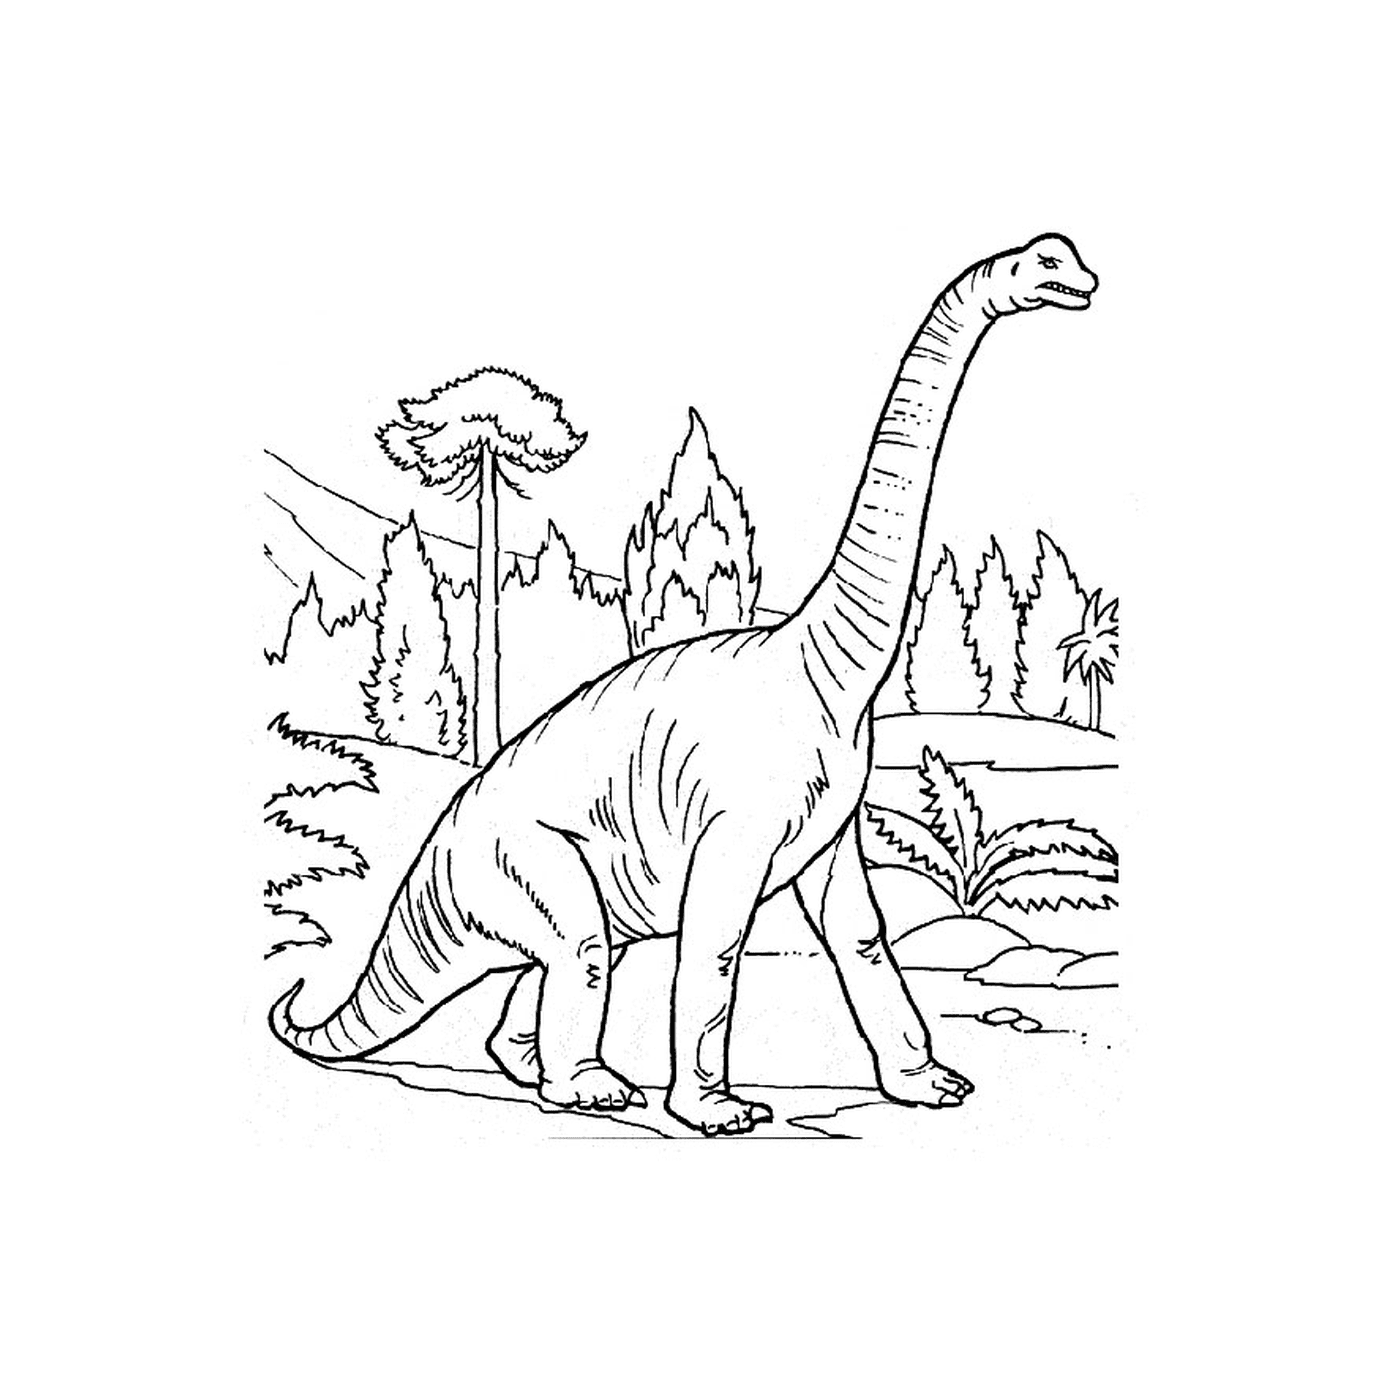  Un dinosaurio en un bosque 